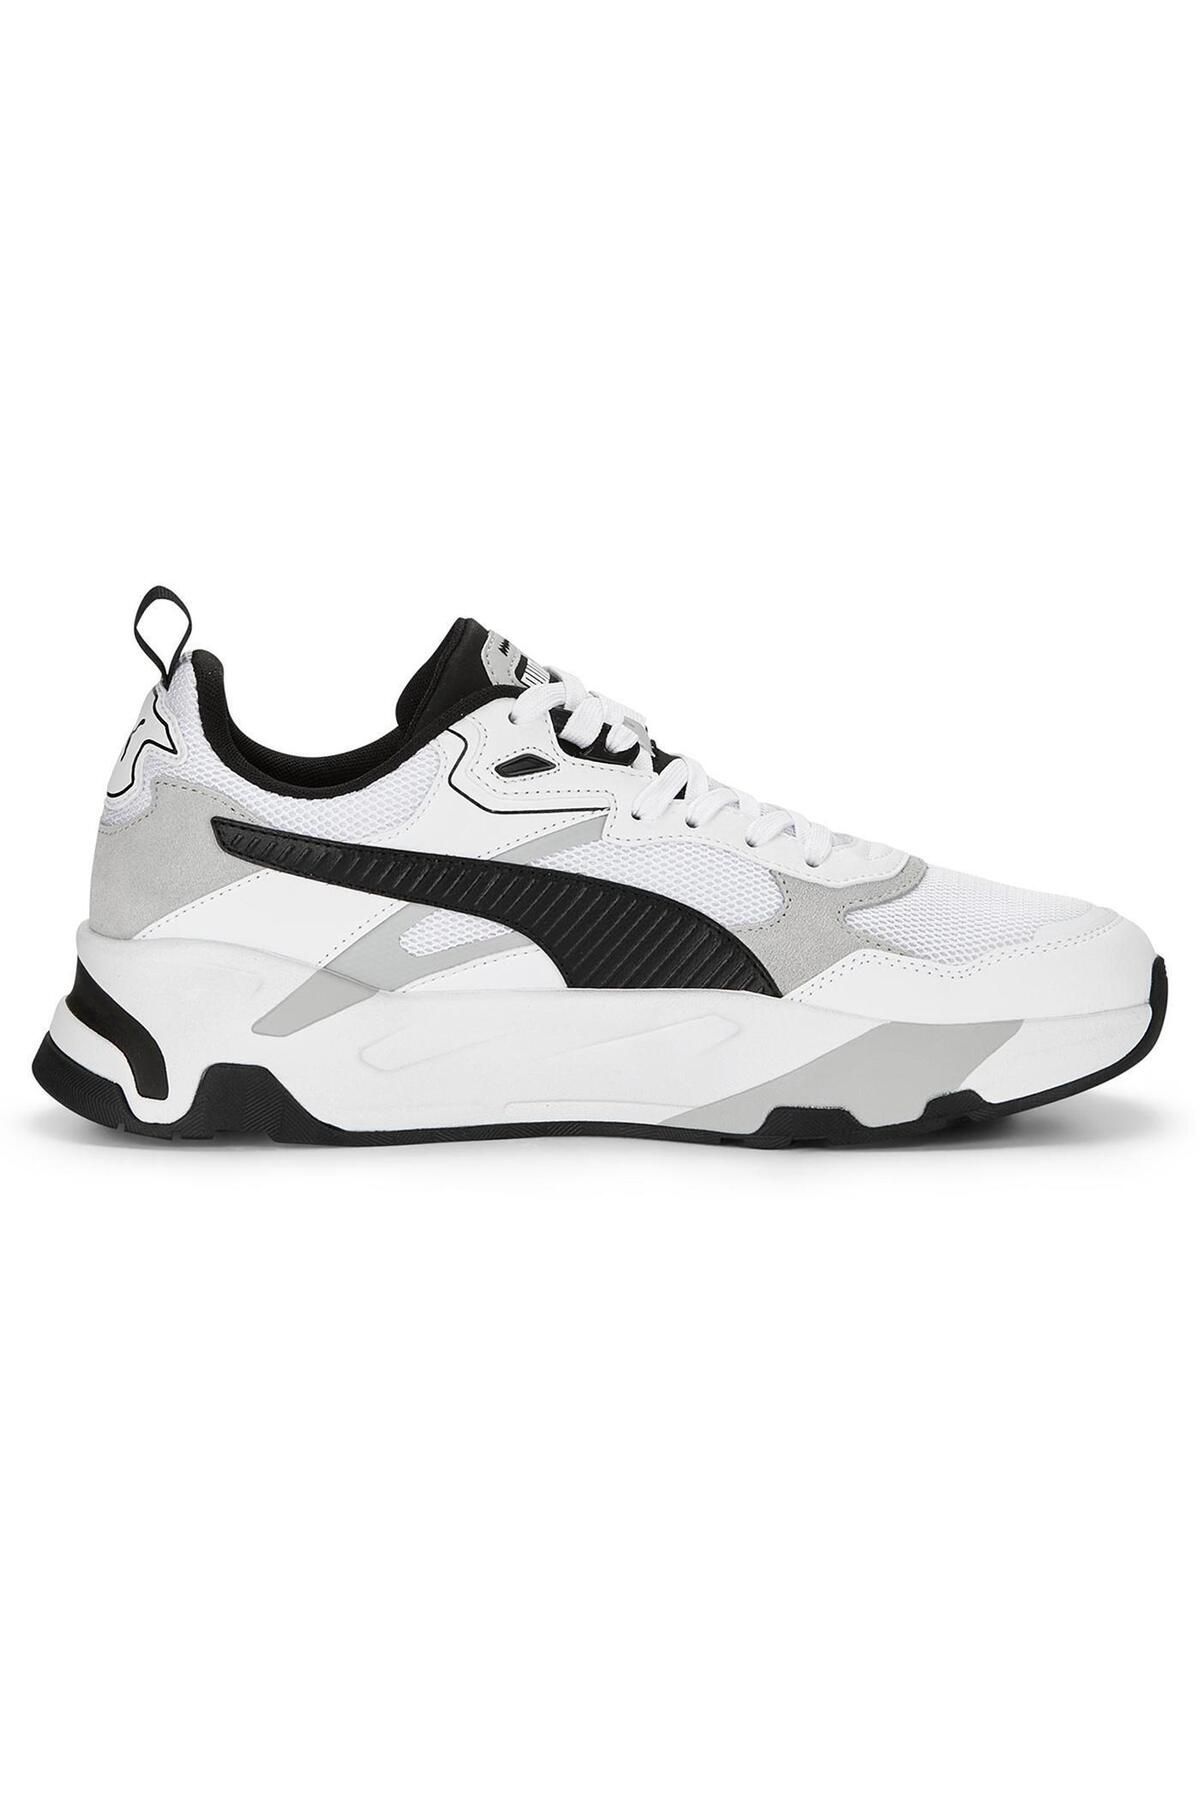 Puma Trinity-white-black-light Gray Unisex Spor Ayakkabısı 389289